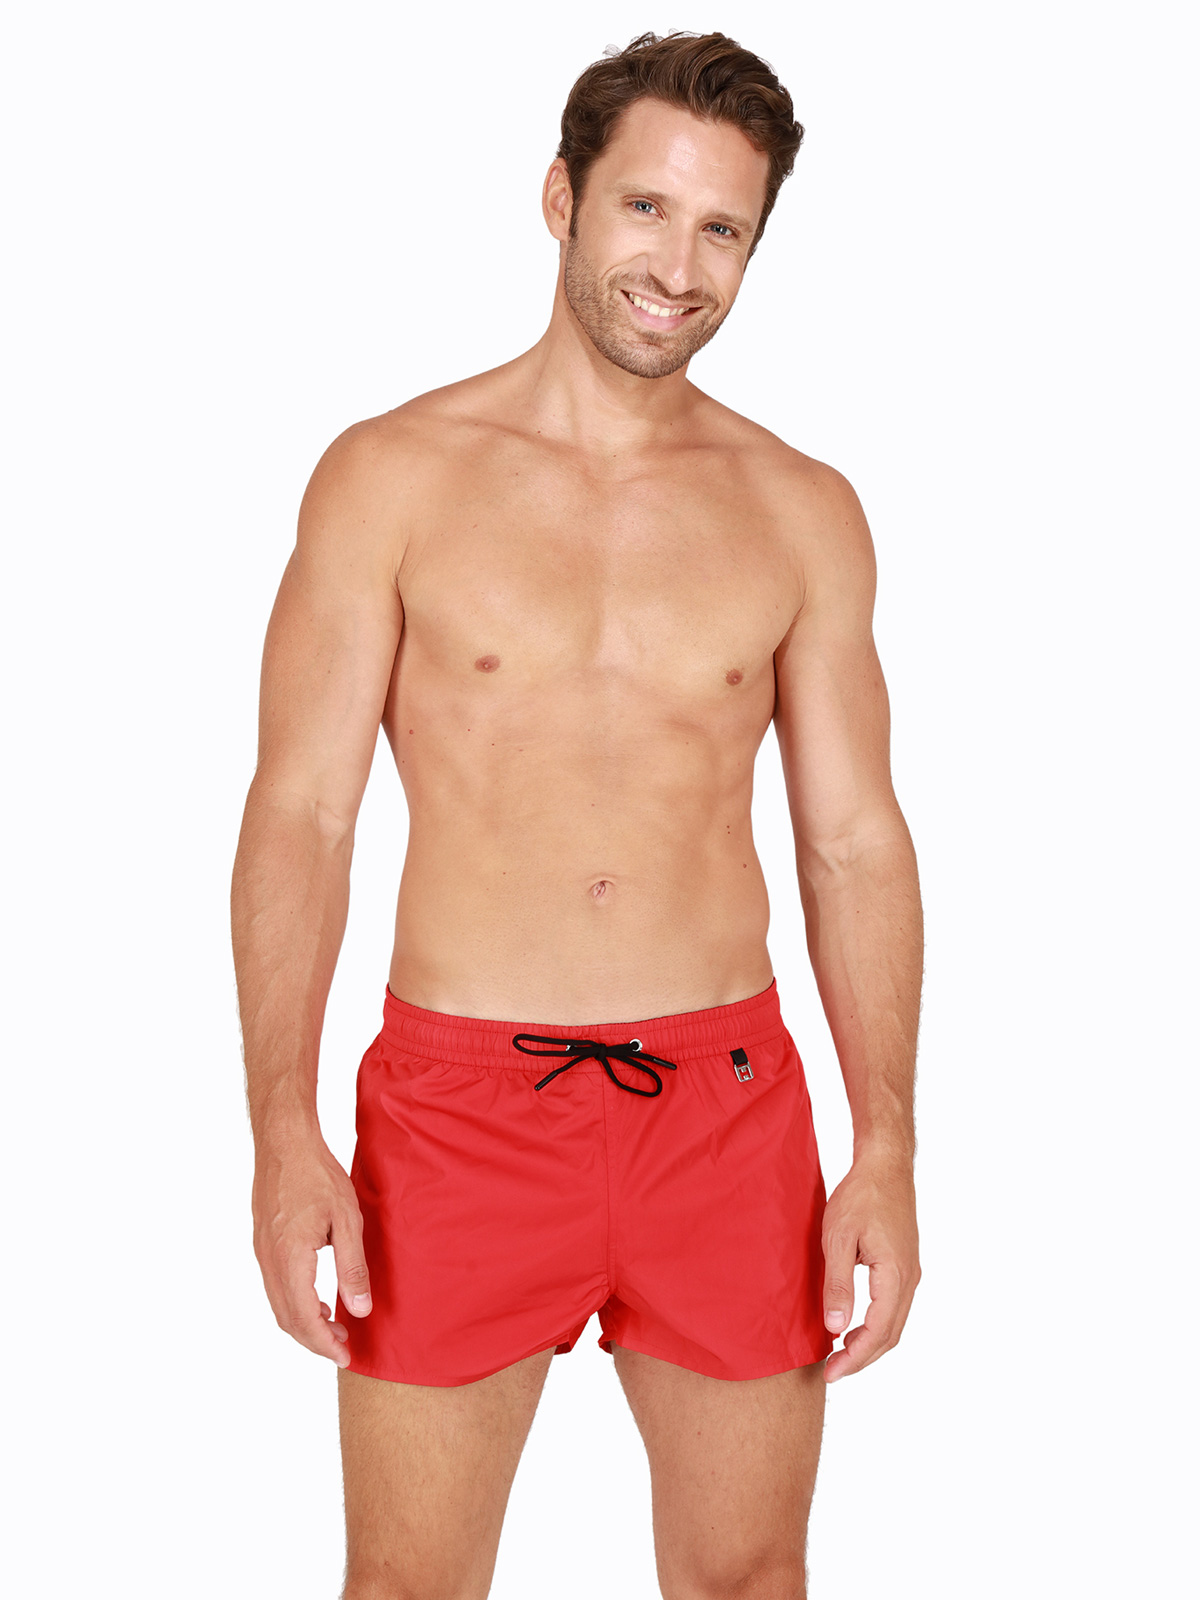 пляжные шорты мужские HOM Sunlight, арт. HOM 40-1414